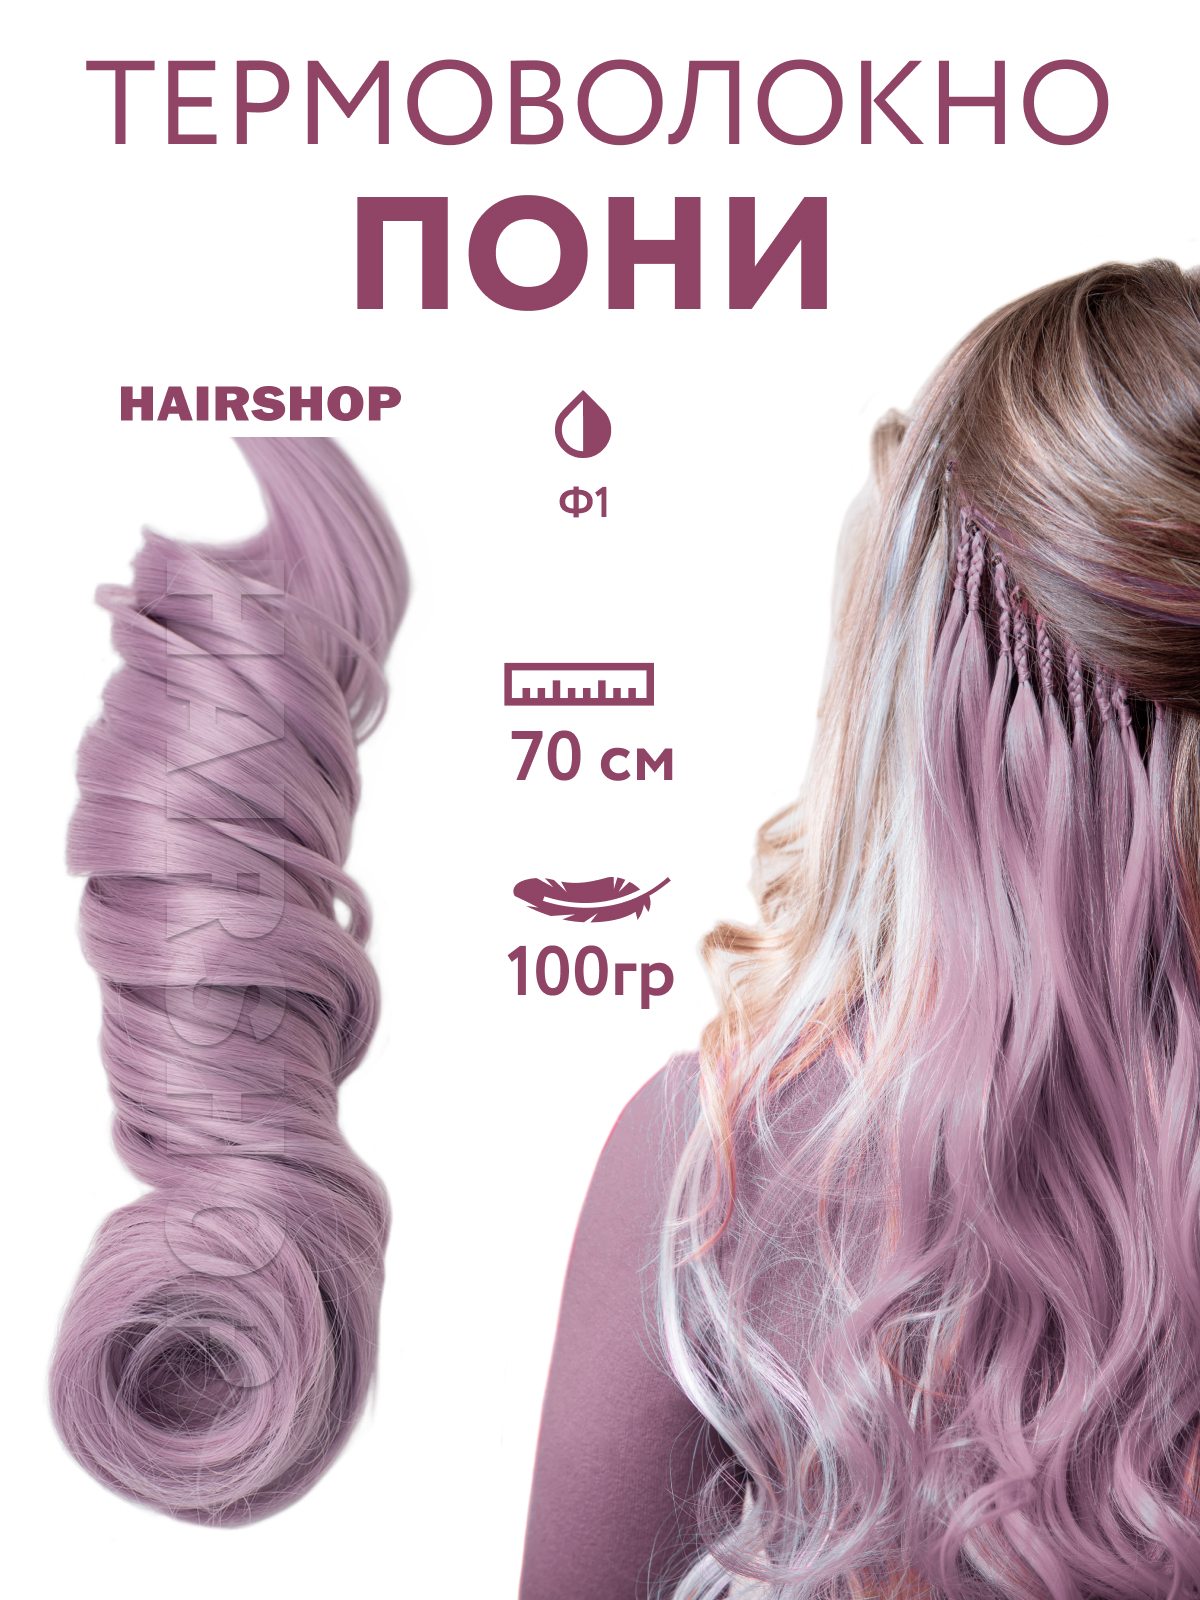 Канекалон HAIRSHOP Пони HairUp для точечного афронаращивания Ф1 Пастельный фиолетовый 1,4м канекалон hairshop пони hairup для точечного афронаращивания о1 персик пастельный 1 4м